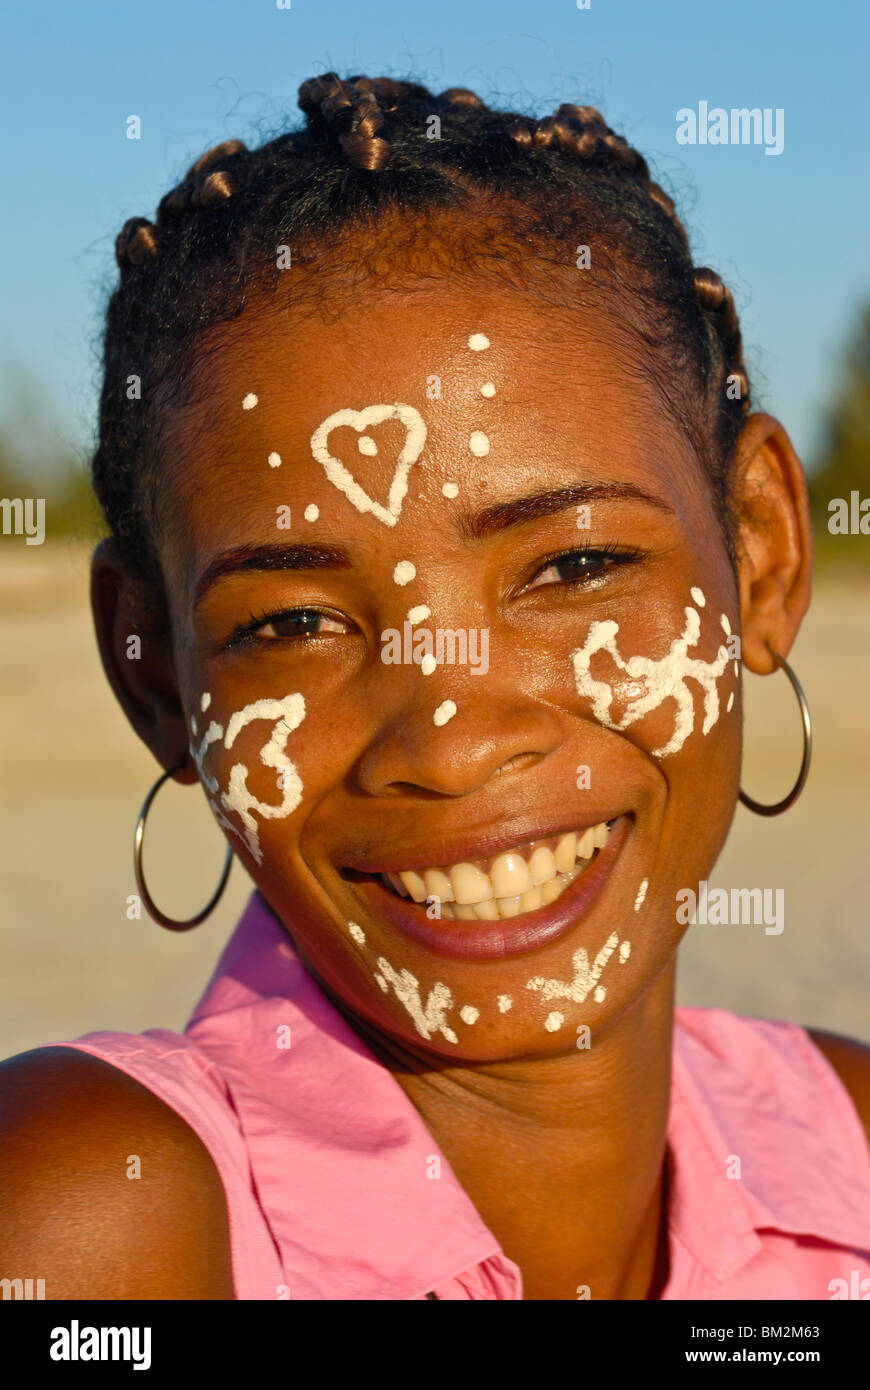 Jolie fille malgache avec la peinture traditionnelle sur son visage, Morondave, Madagascar Banque D'Images